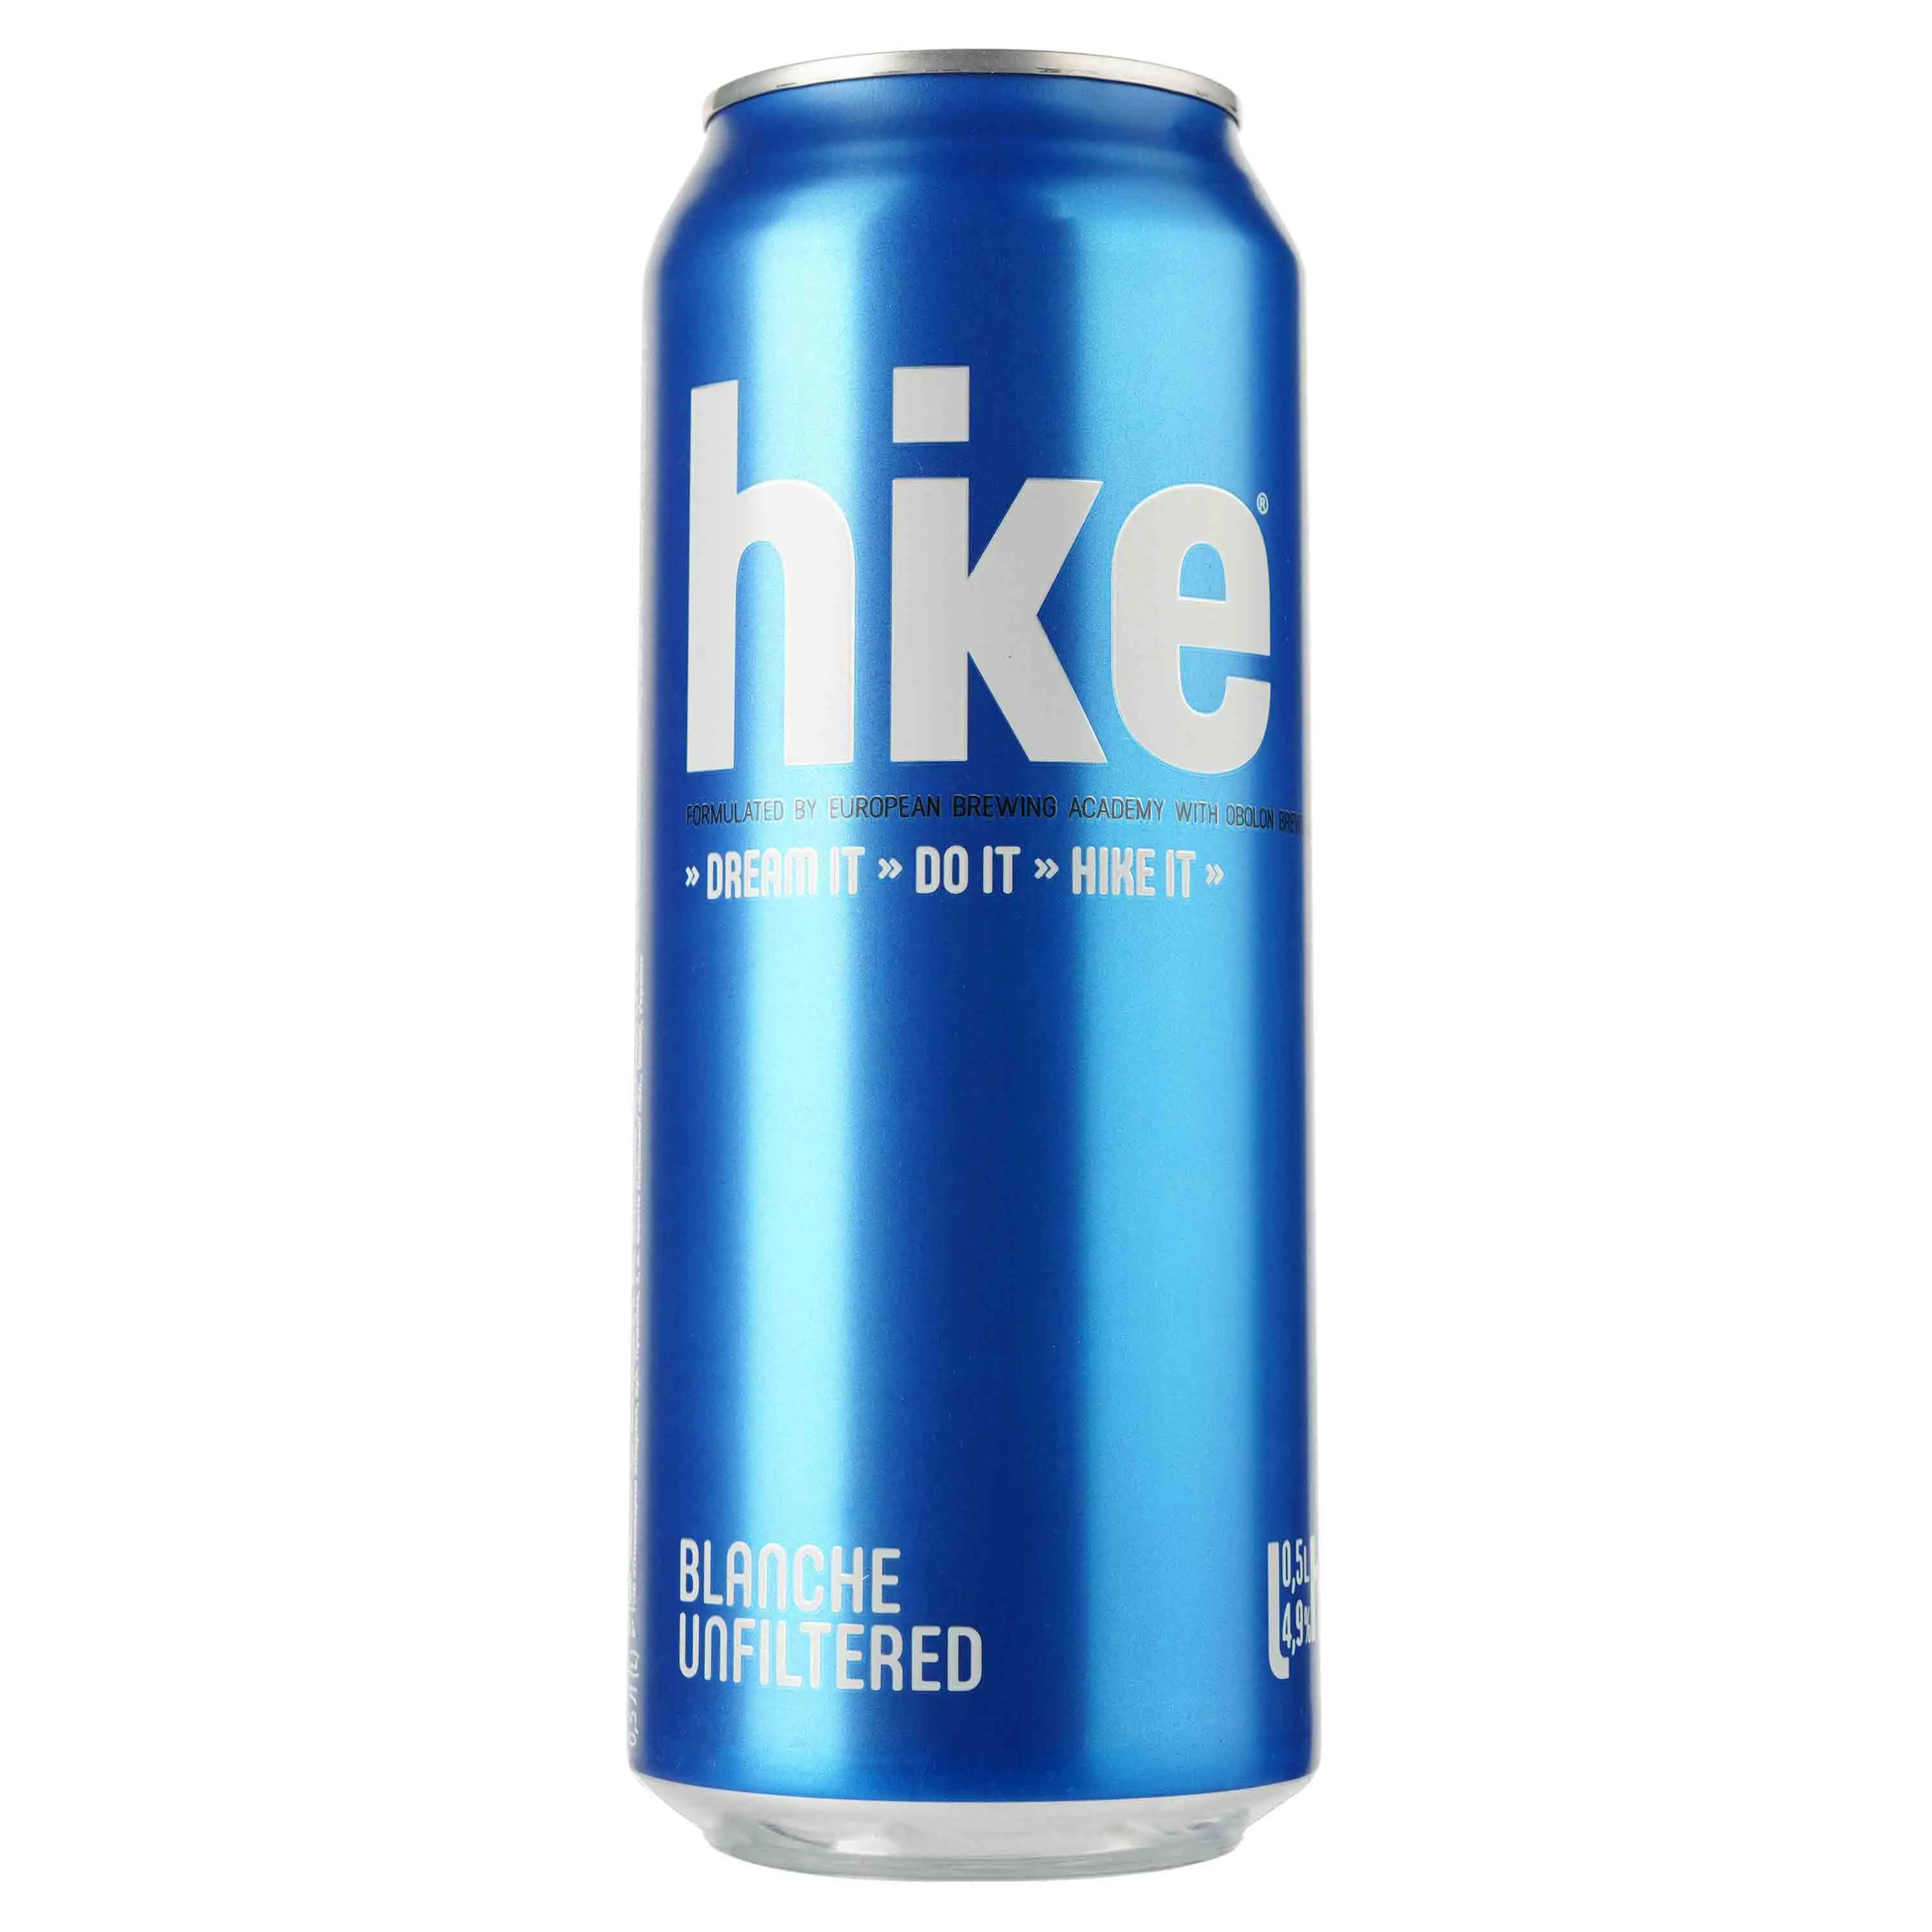 Пиво Hike Blanche, светлое, 4,9%, ж/б, 0,5 л